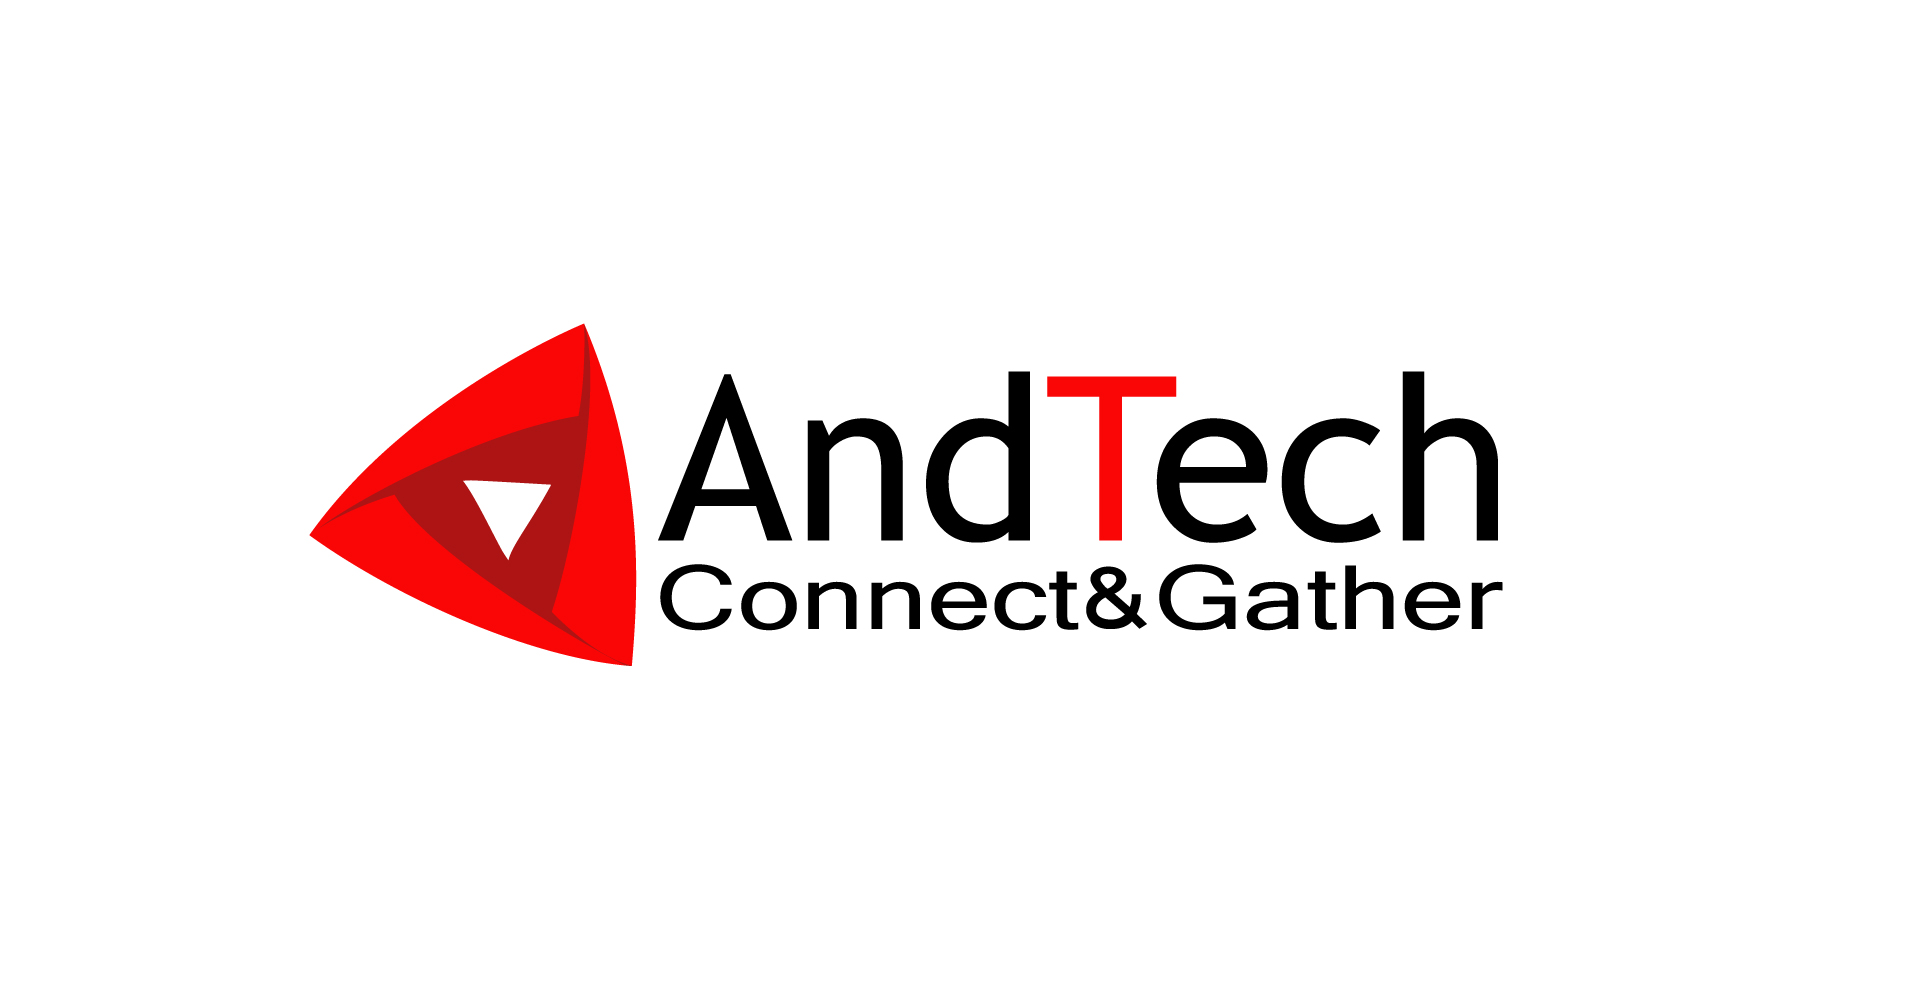 7月28日(金) AndTech「リチウムイオンキャパシタの最新材料技術/開発